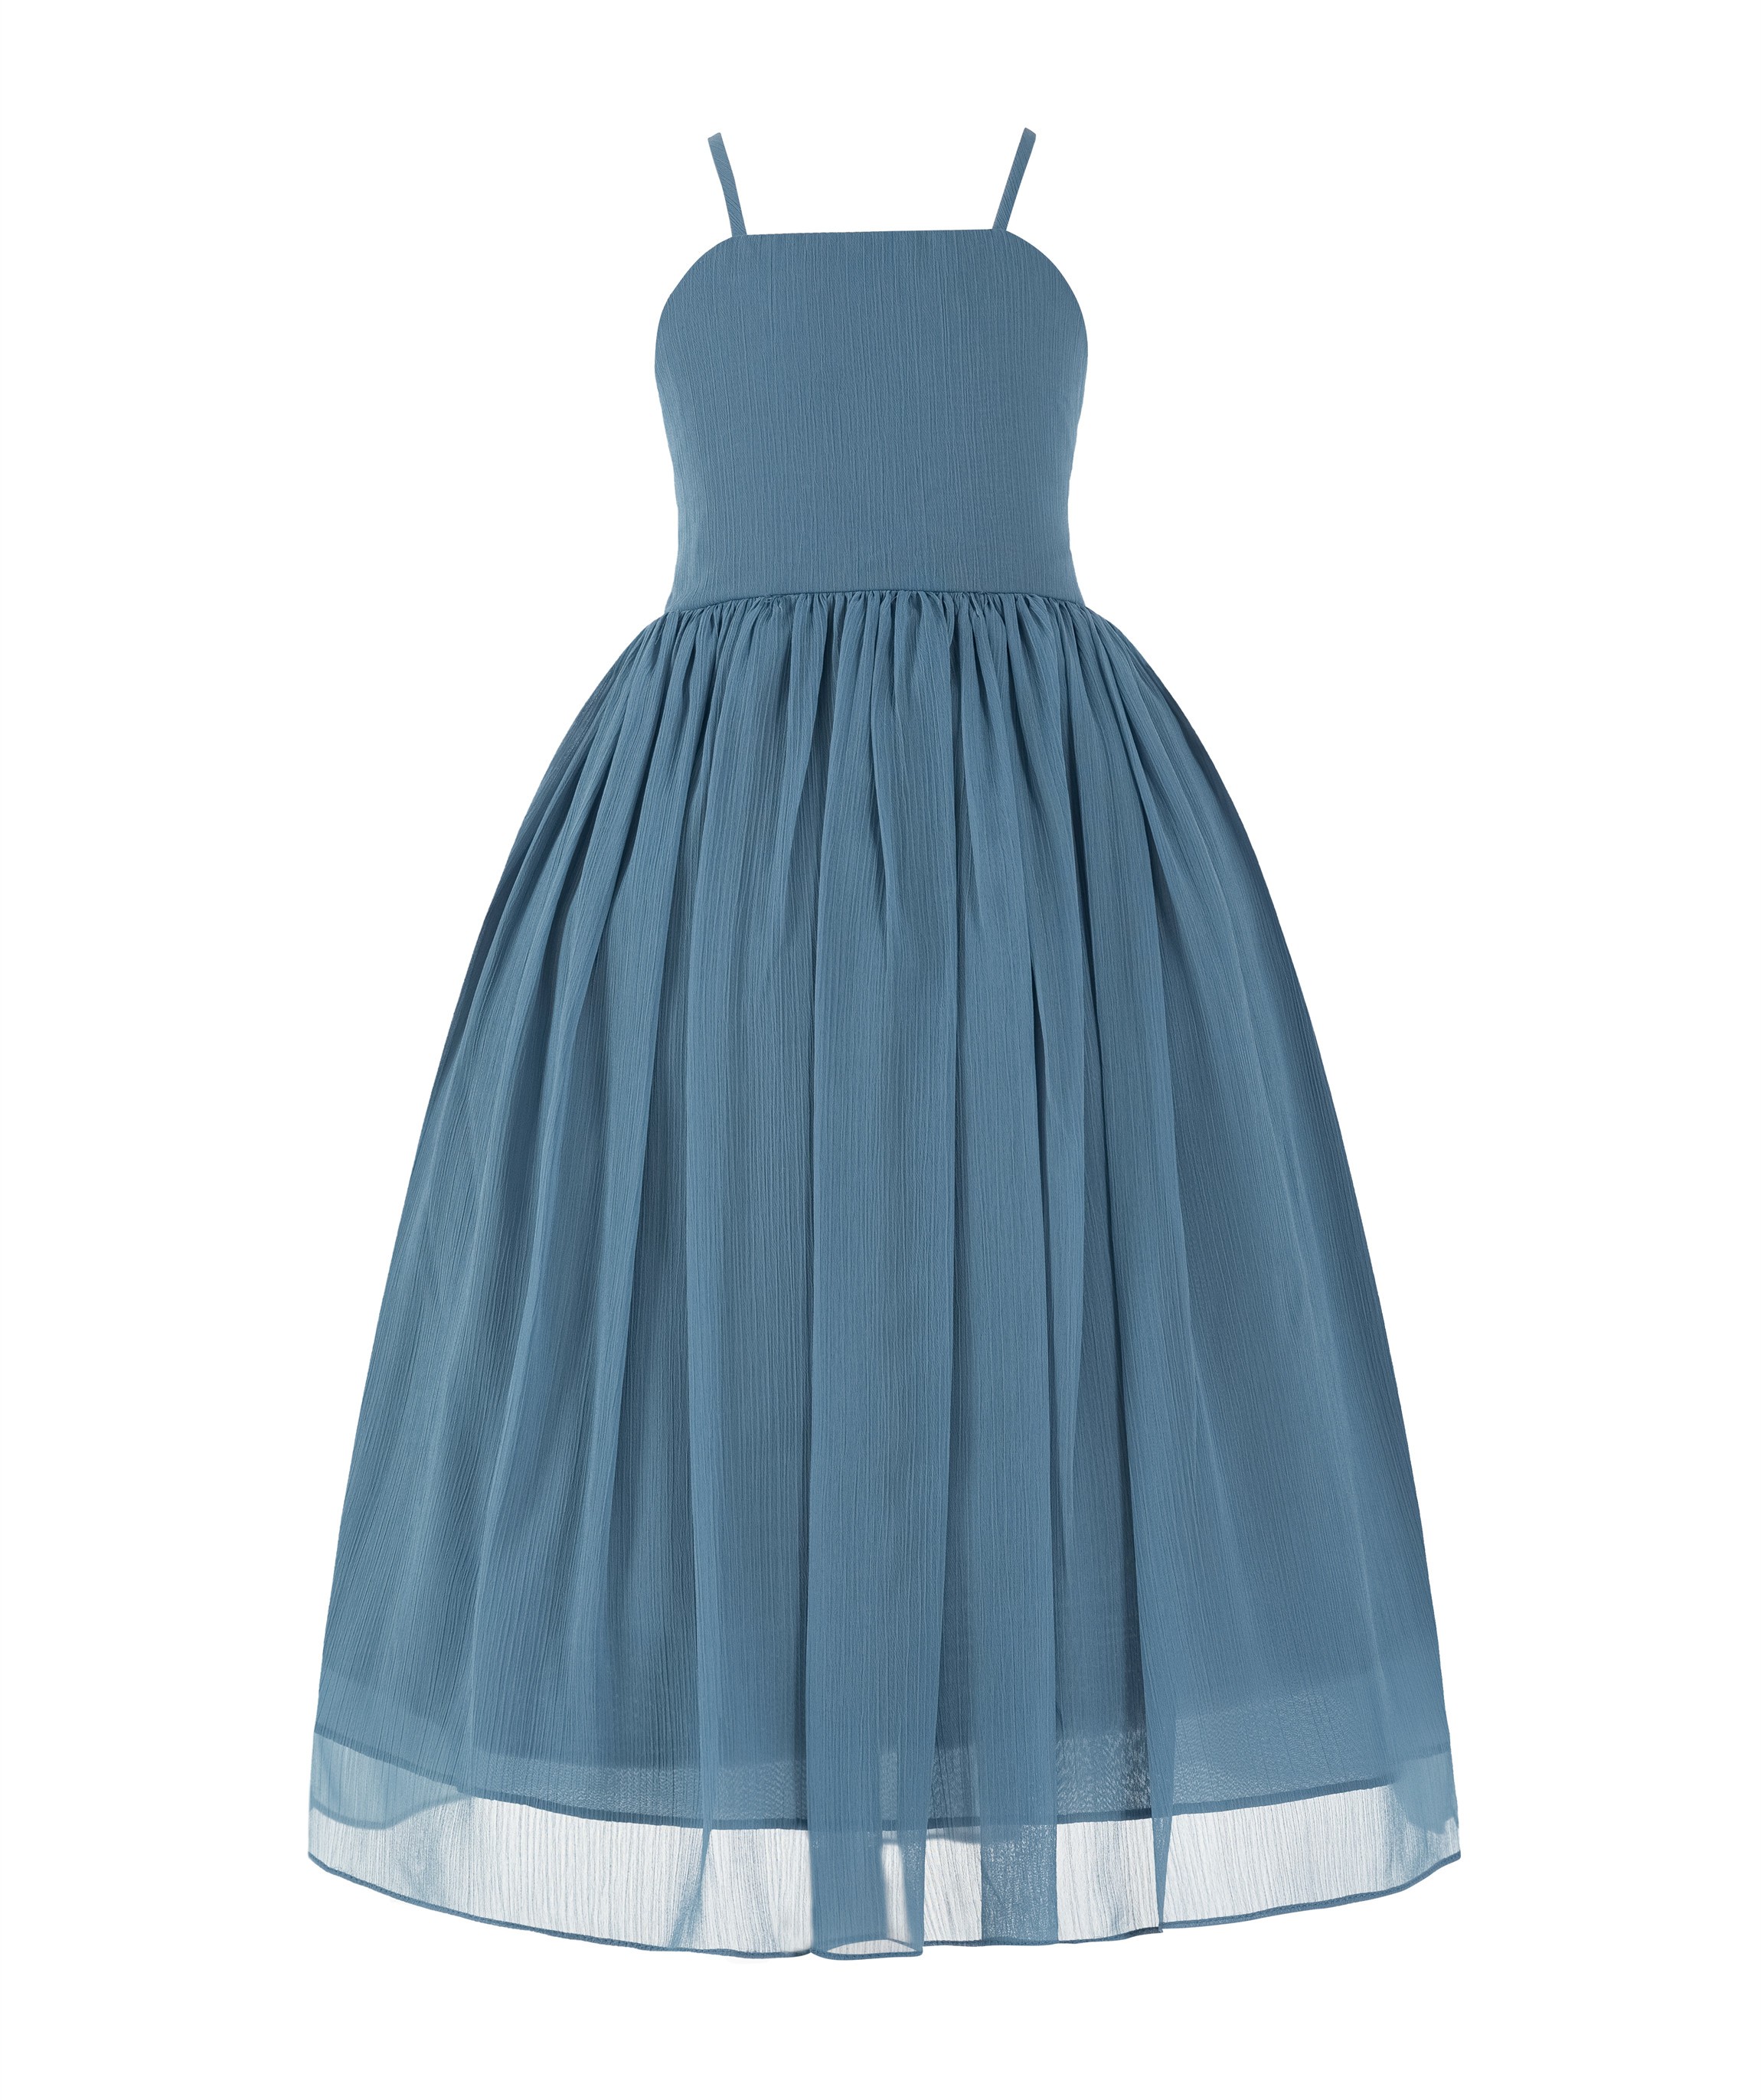 Steel Blue Criss Cross Chiffon Flower Girl Dress Summer Dresses 191